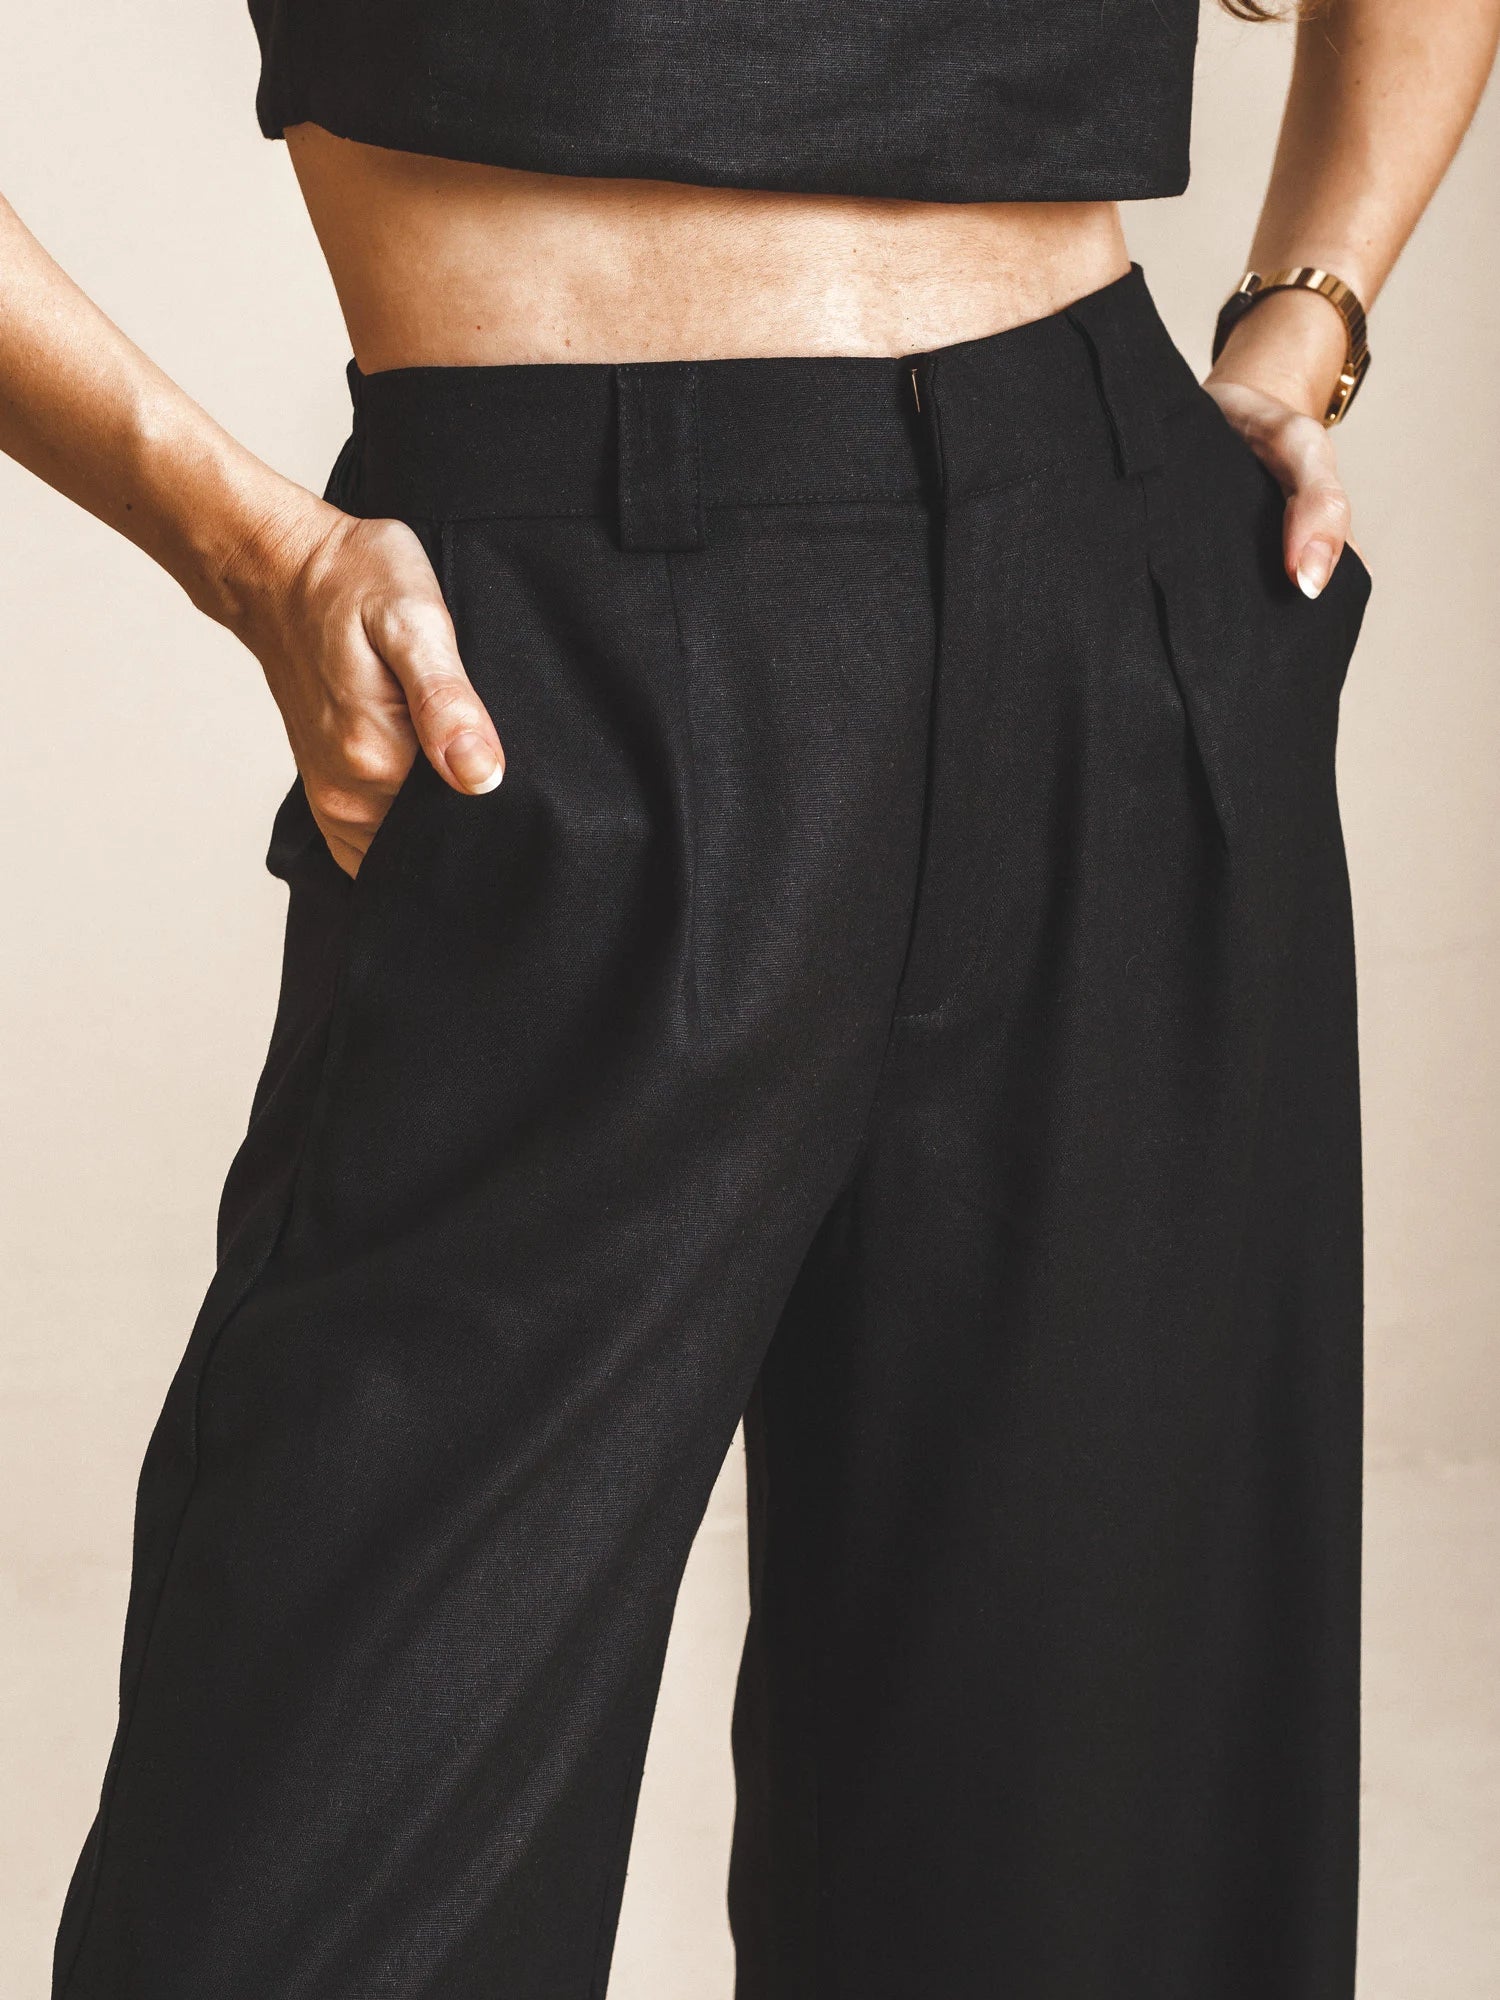 Calça Pantalona de Alfaiataria em Linho e Viscose FSC™ Preta. Compre online moda sustentável e atemporal na Minimadeia. Roupas femininas estilosas, básicas e sustentáveis. Foto produto 05